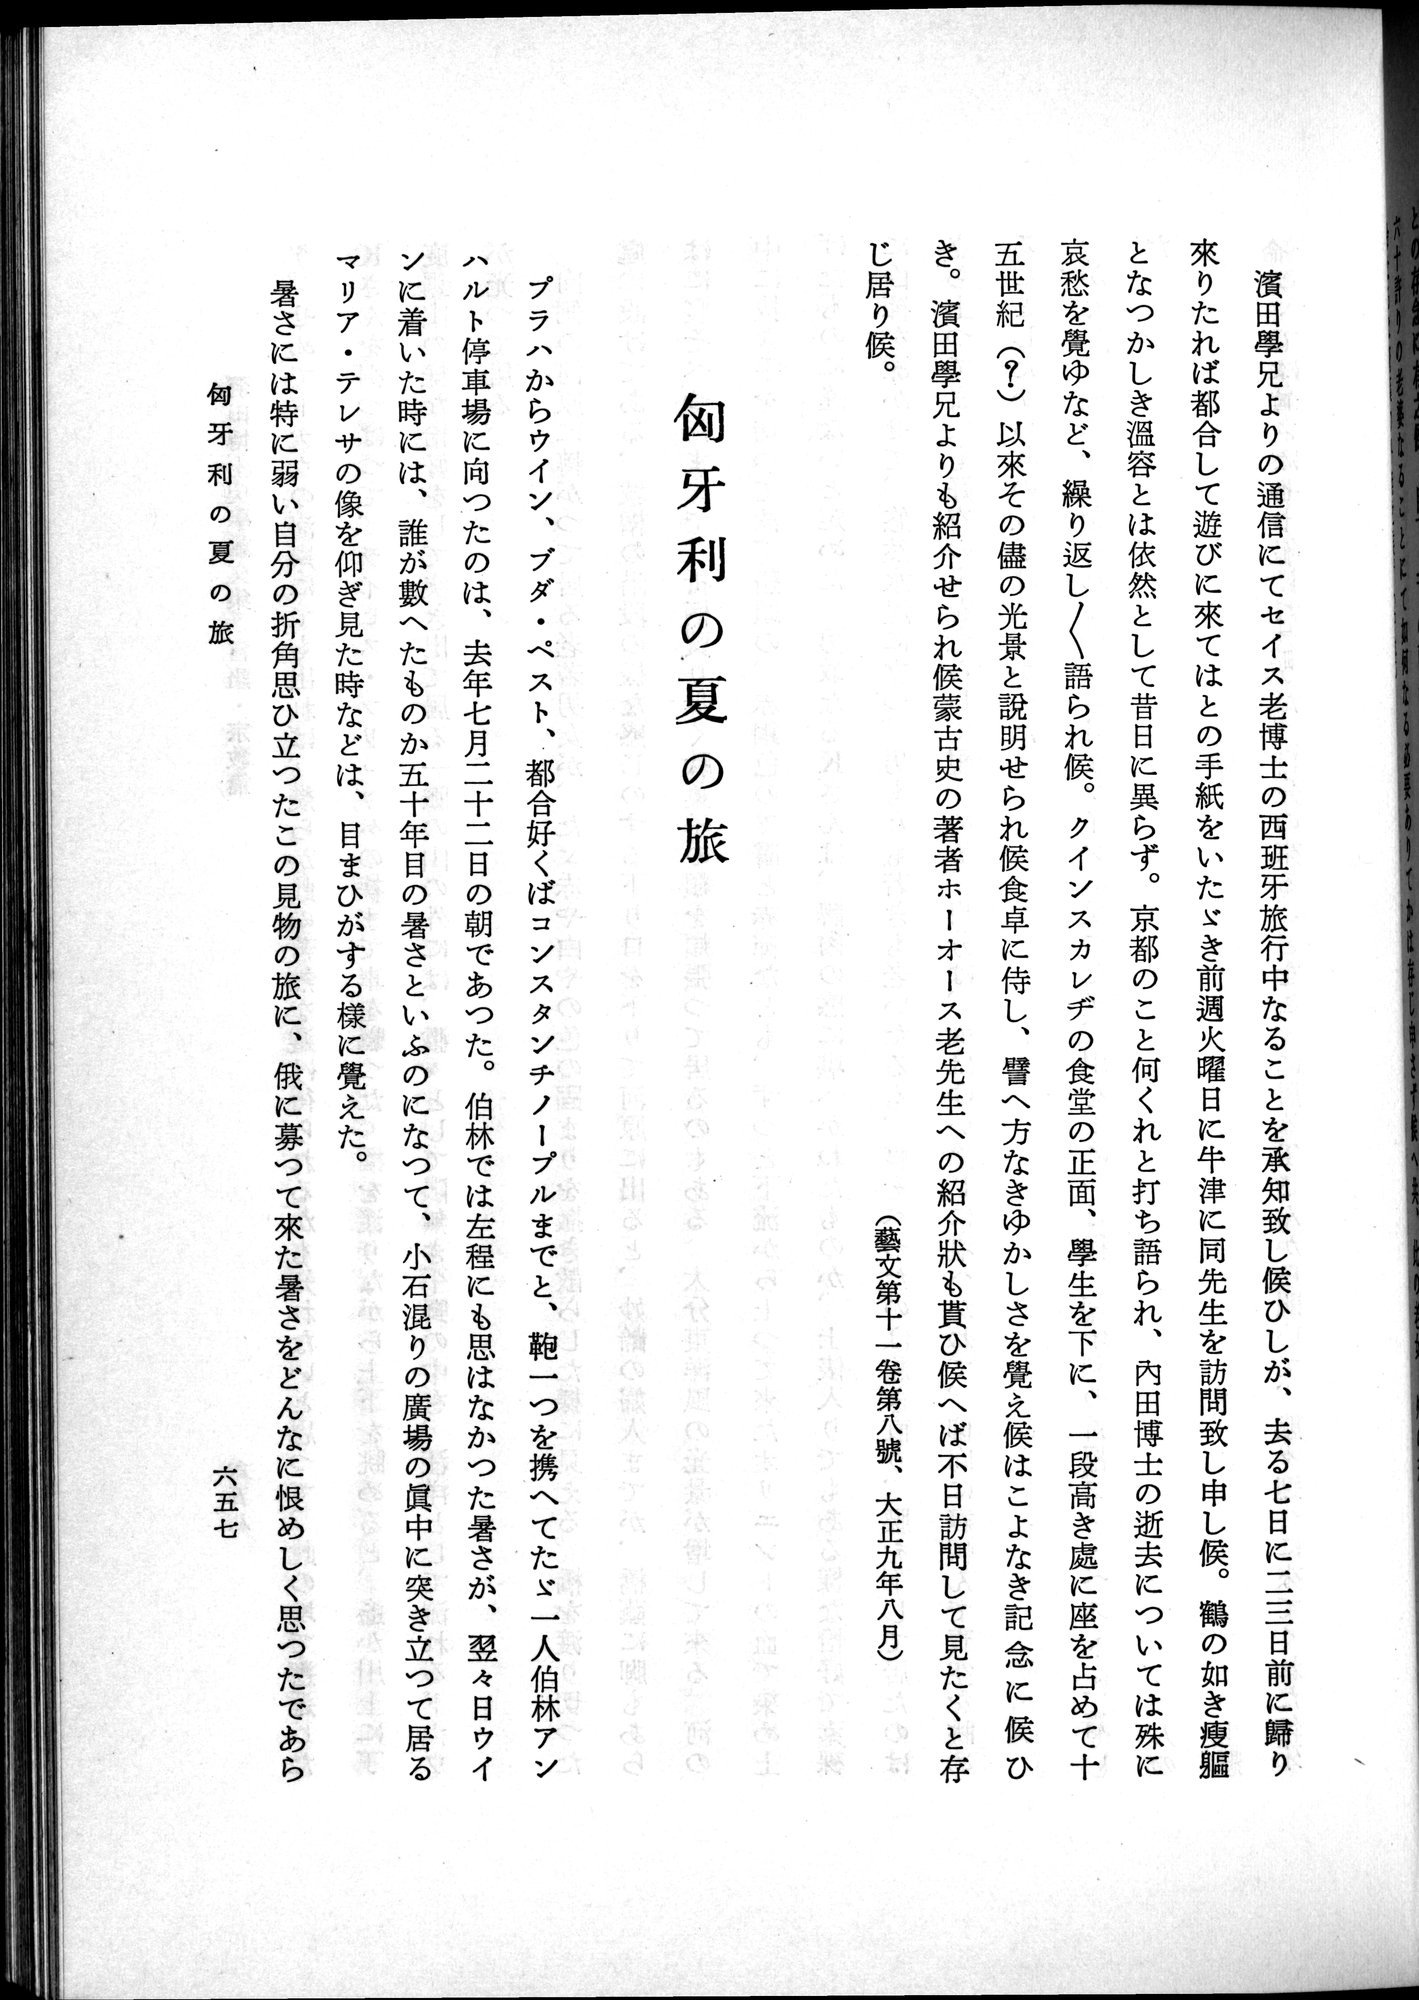 羽田博士史学論文集 : vol.2 / Page 721 (Grayscale High Resolution Image)